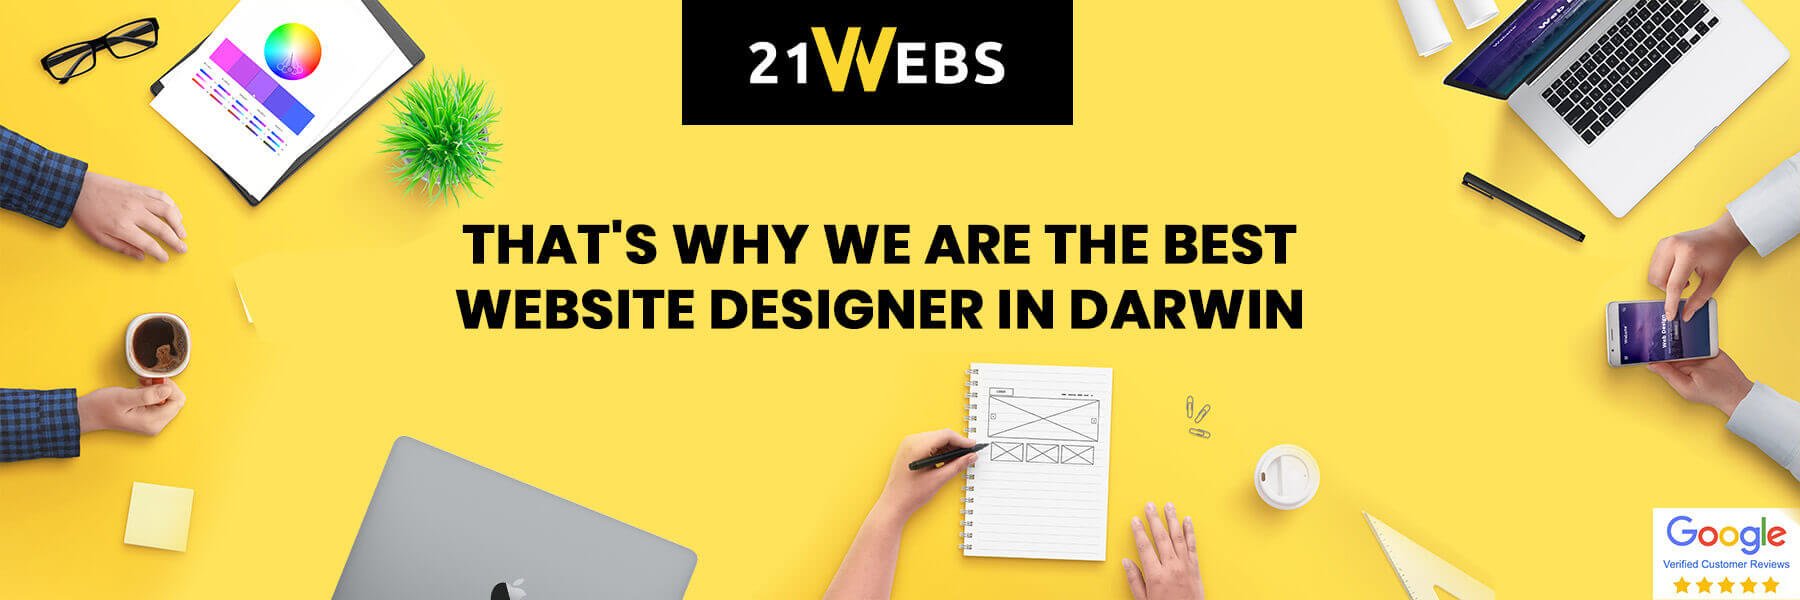 Best Website Designer in Darwin NT - Blog